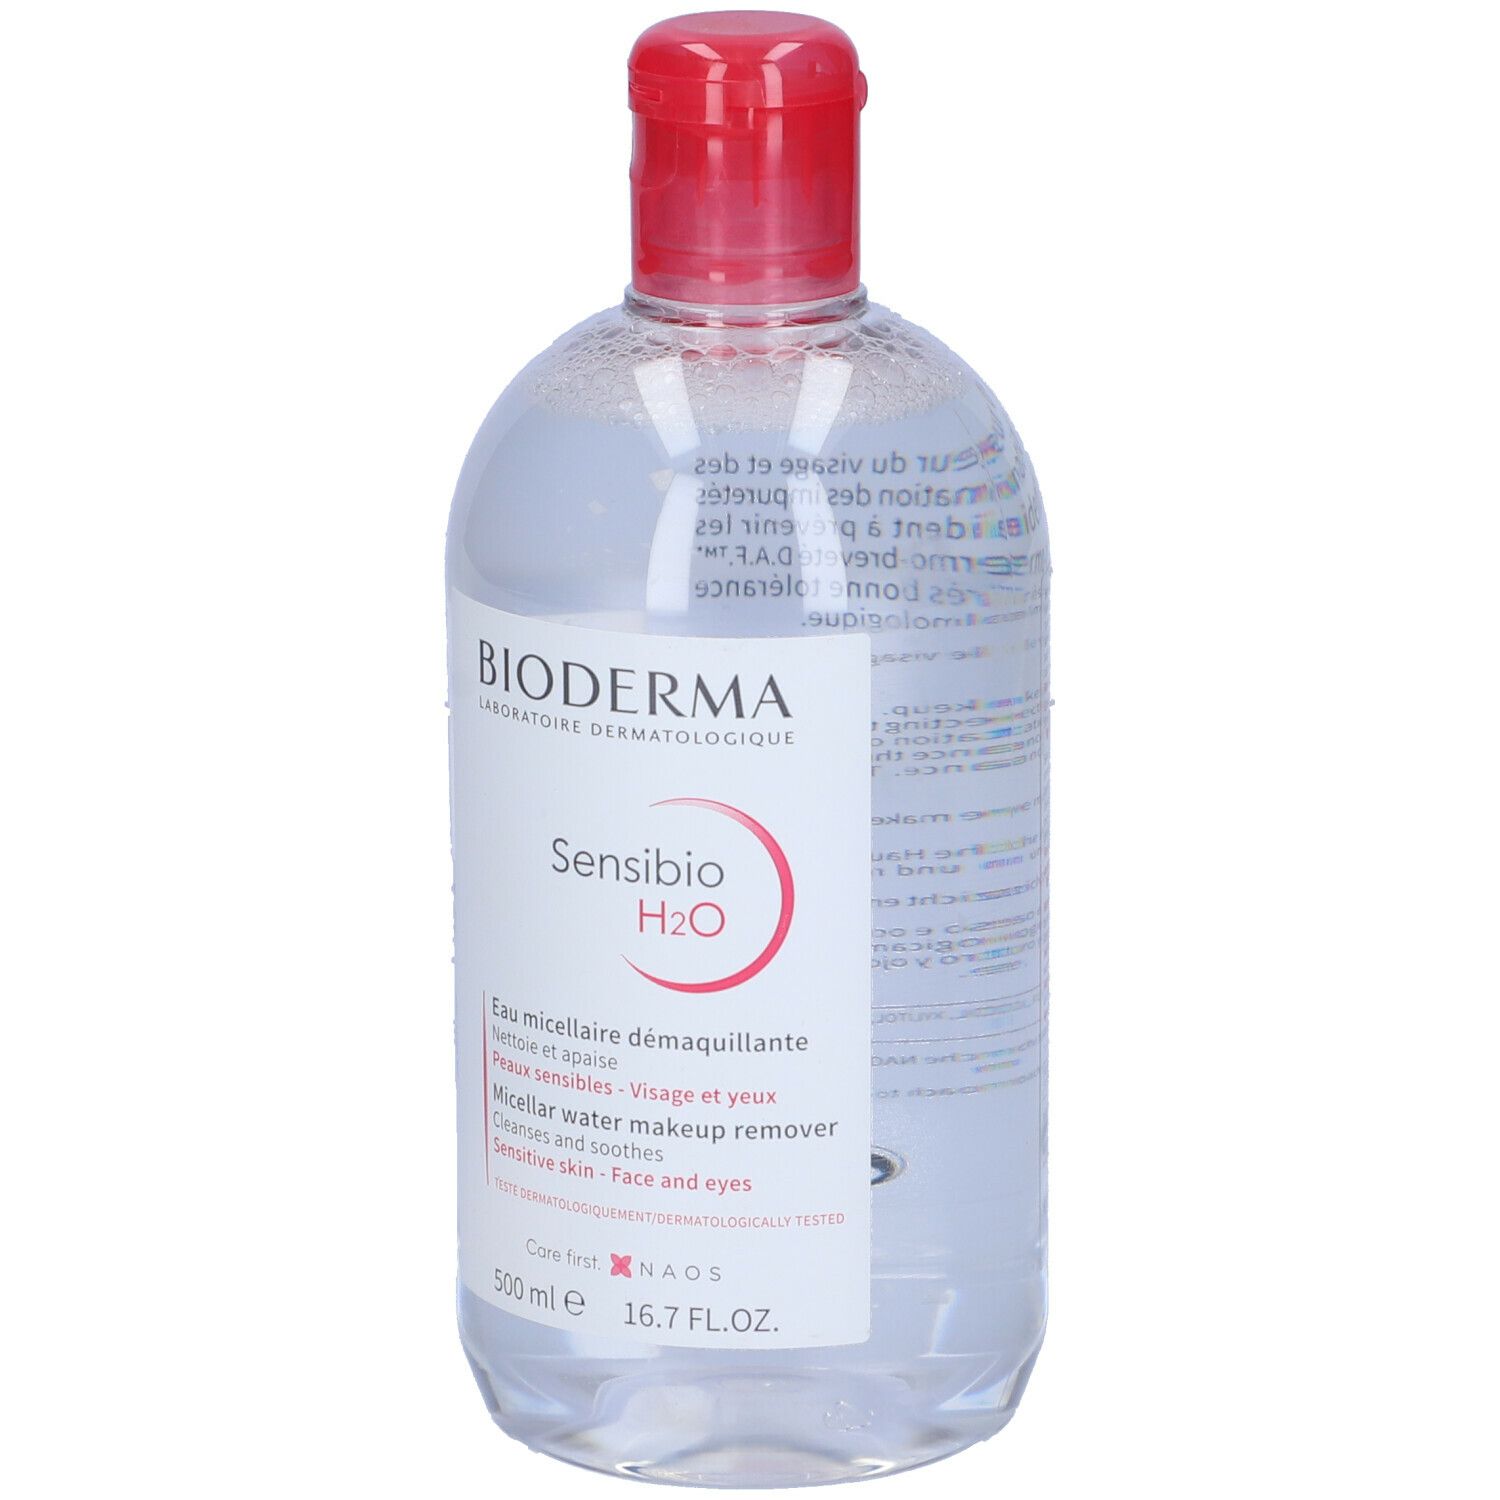 BIODERMA Sensibio H2O acqua micellare struccante 500 ml